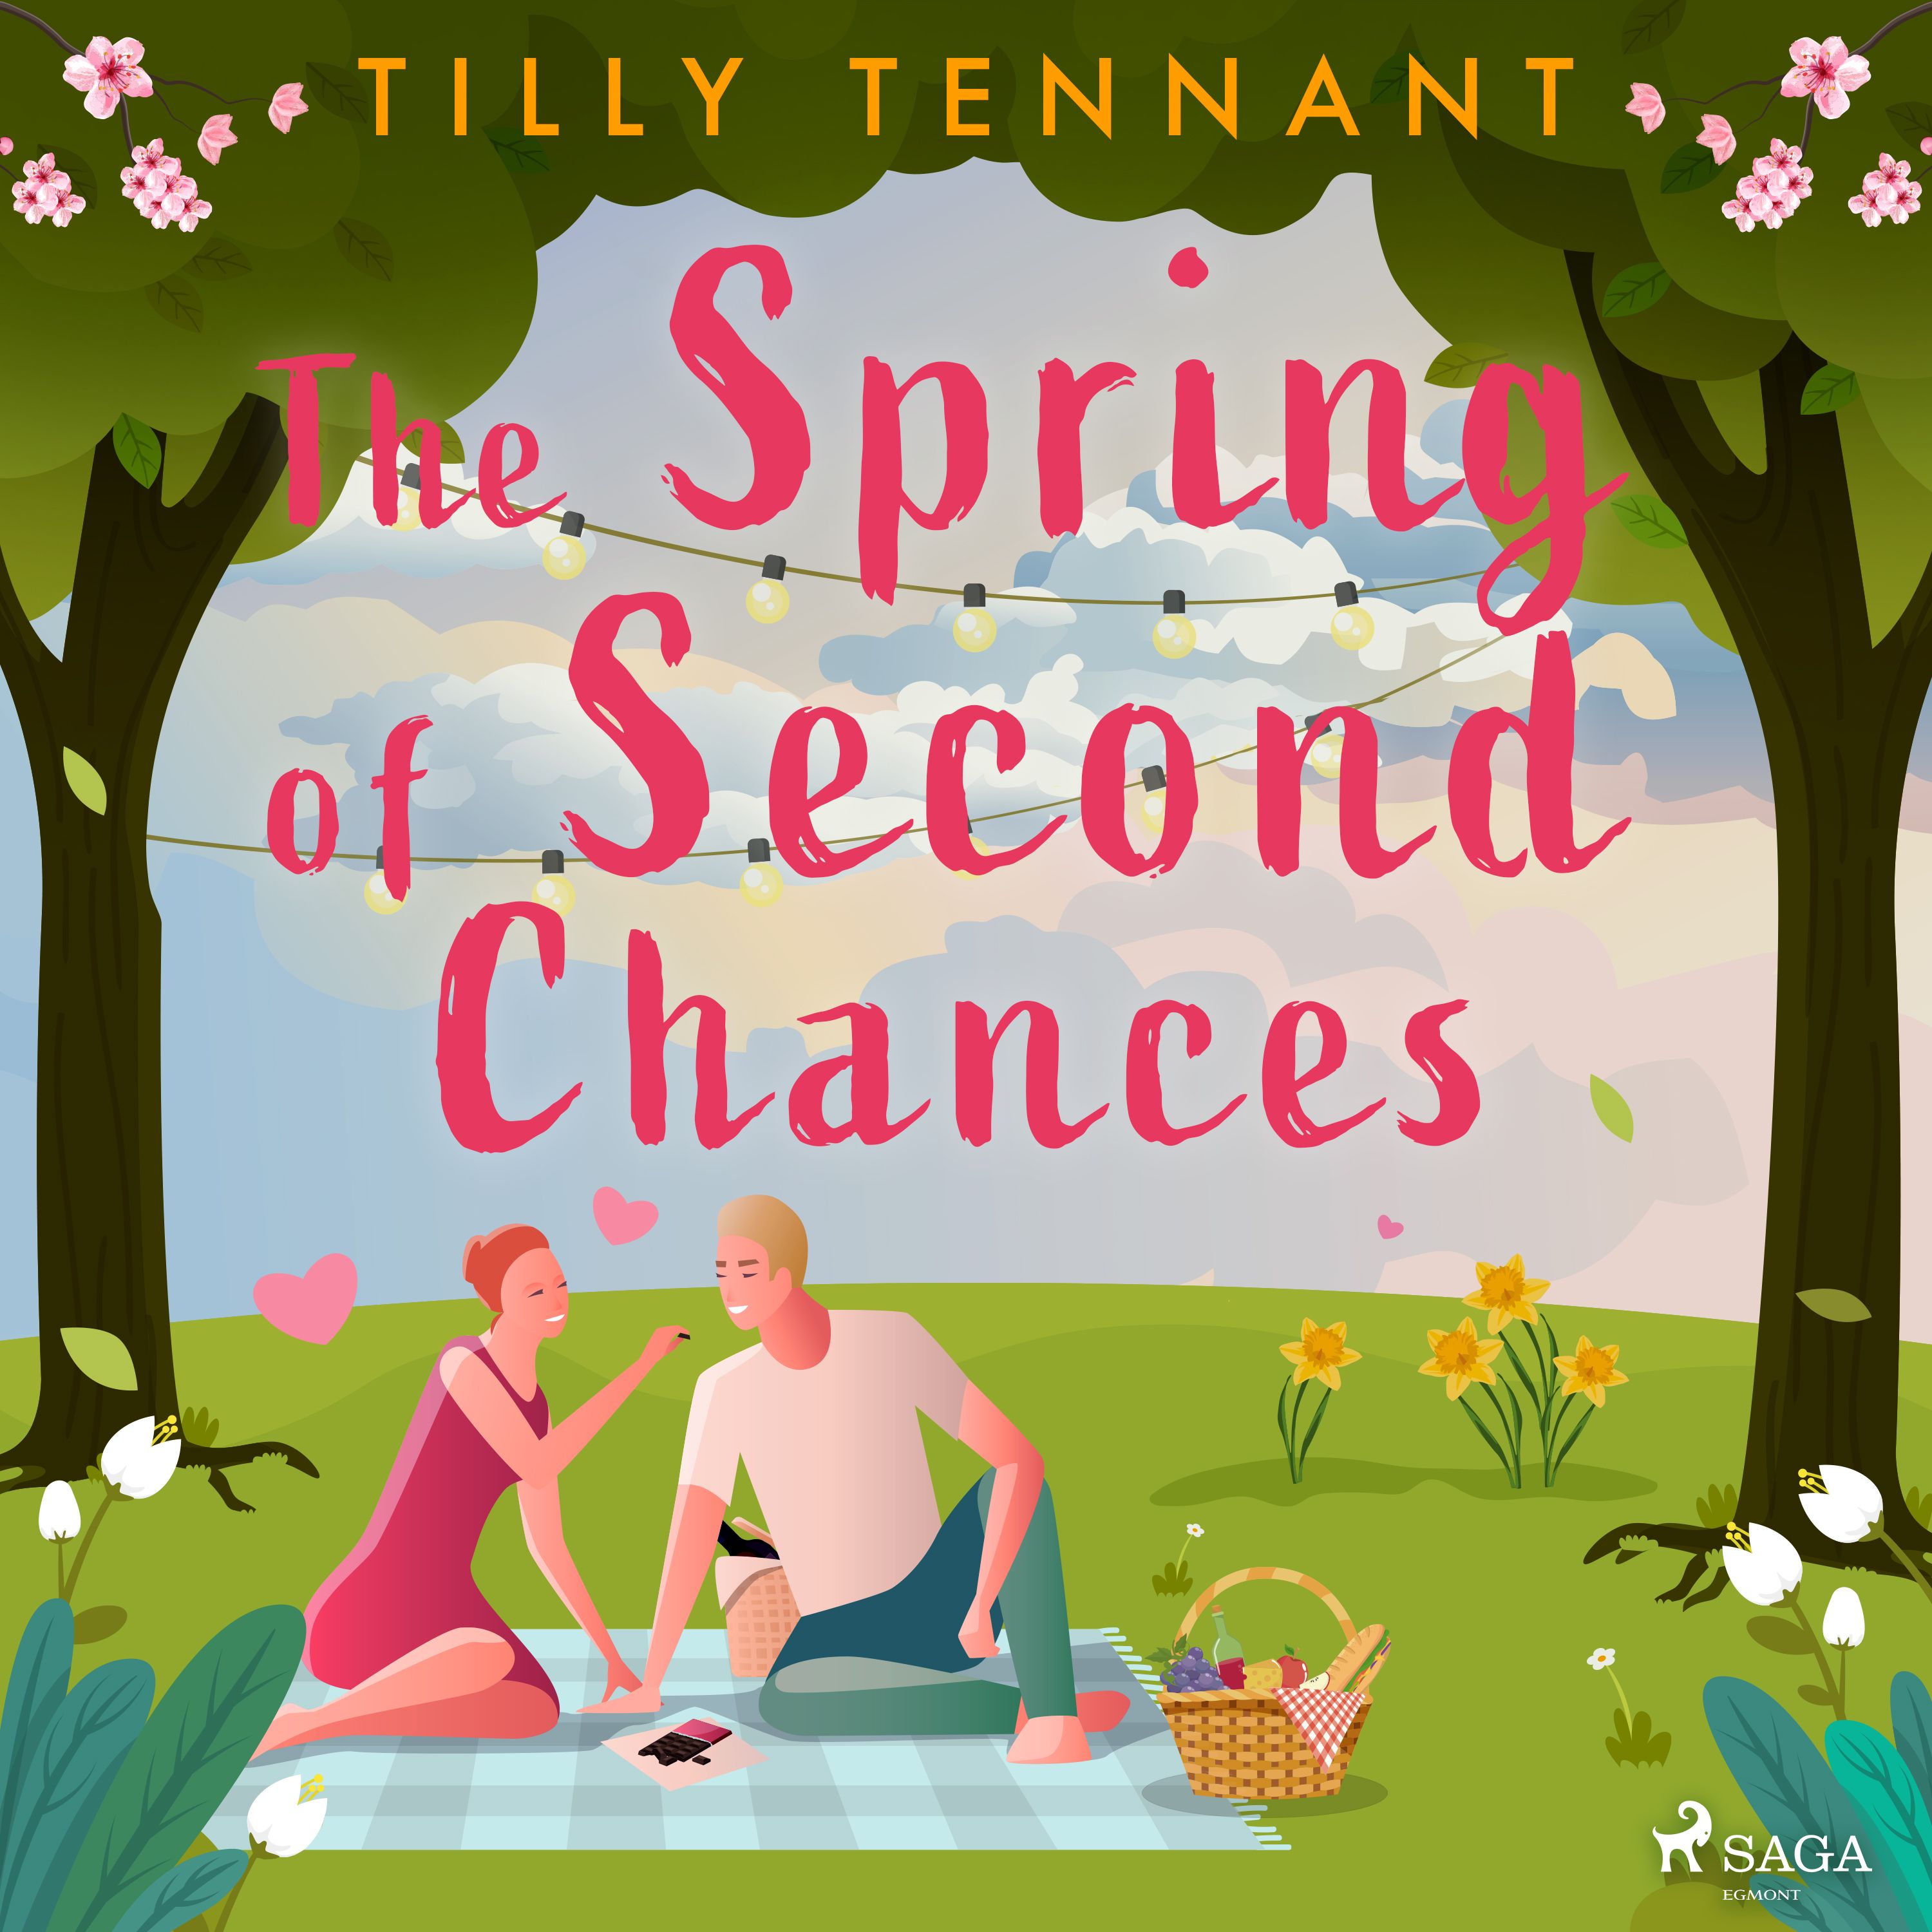 The Spring of Second Chances, ljudbok av Tilly Tennant